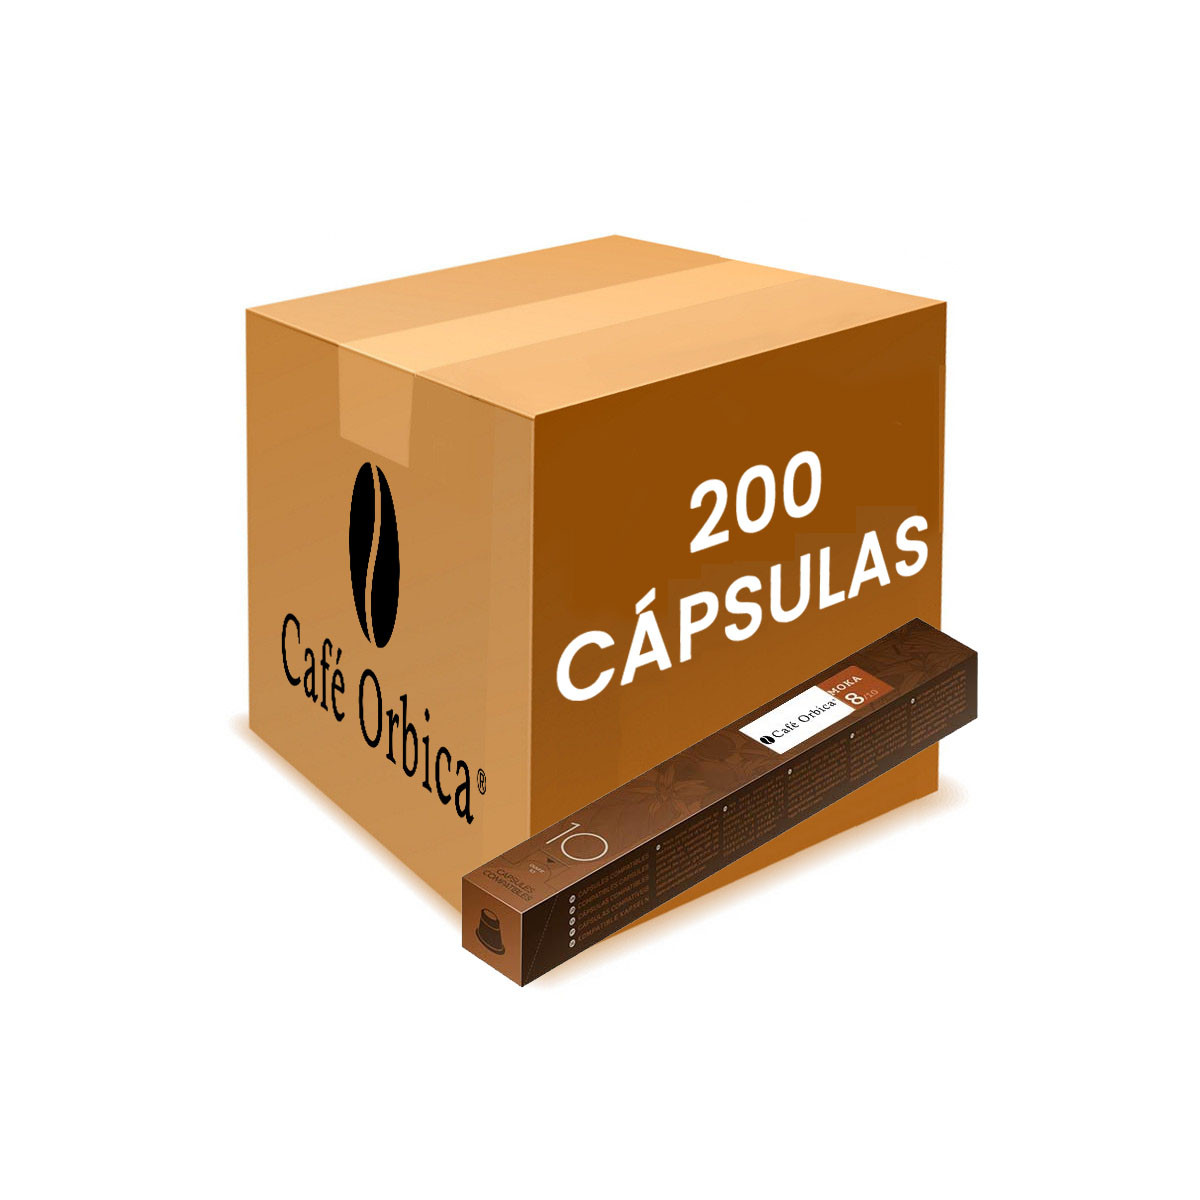 200 Capsulas Nespresso para Empresas